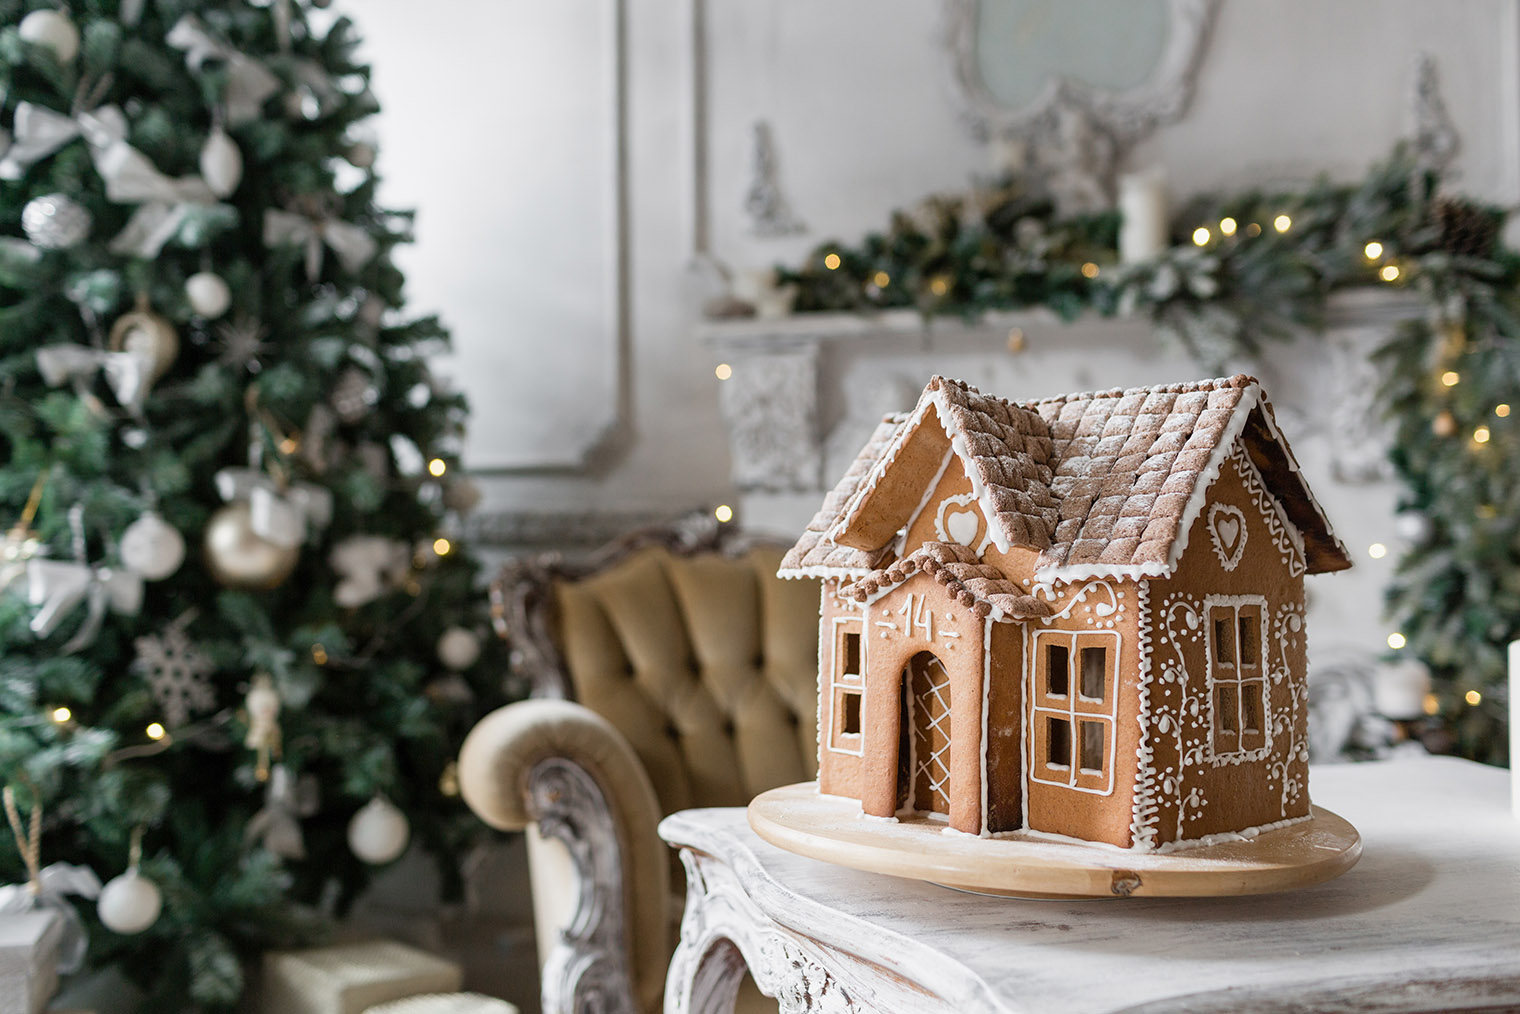 Пряничный домик ставят на стол в качестве украшения. Съедобный декор не хранят, его лучше съесть в течение праздников. Фотография: Fusionstudio / Shutterstock